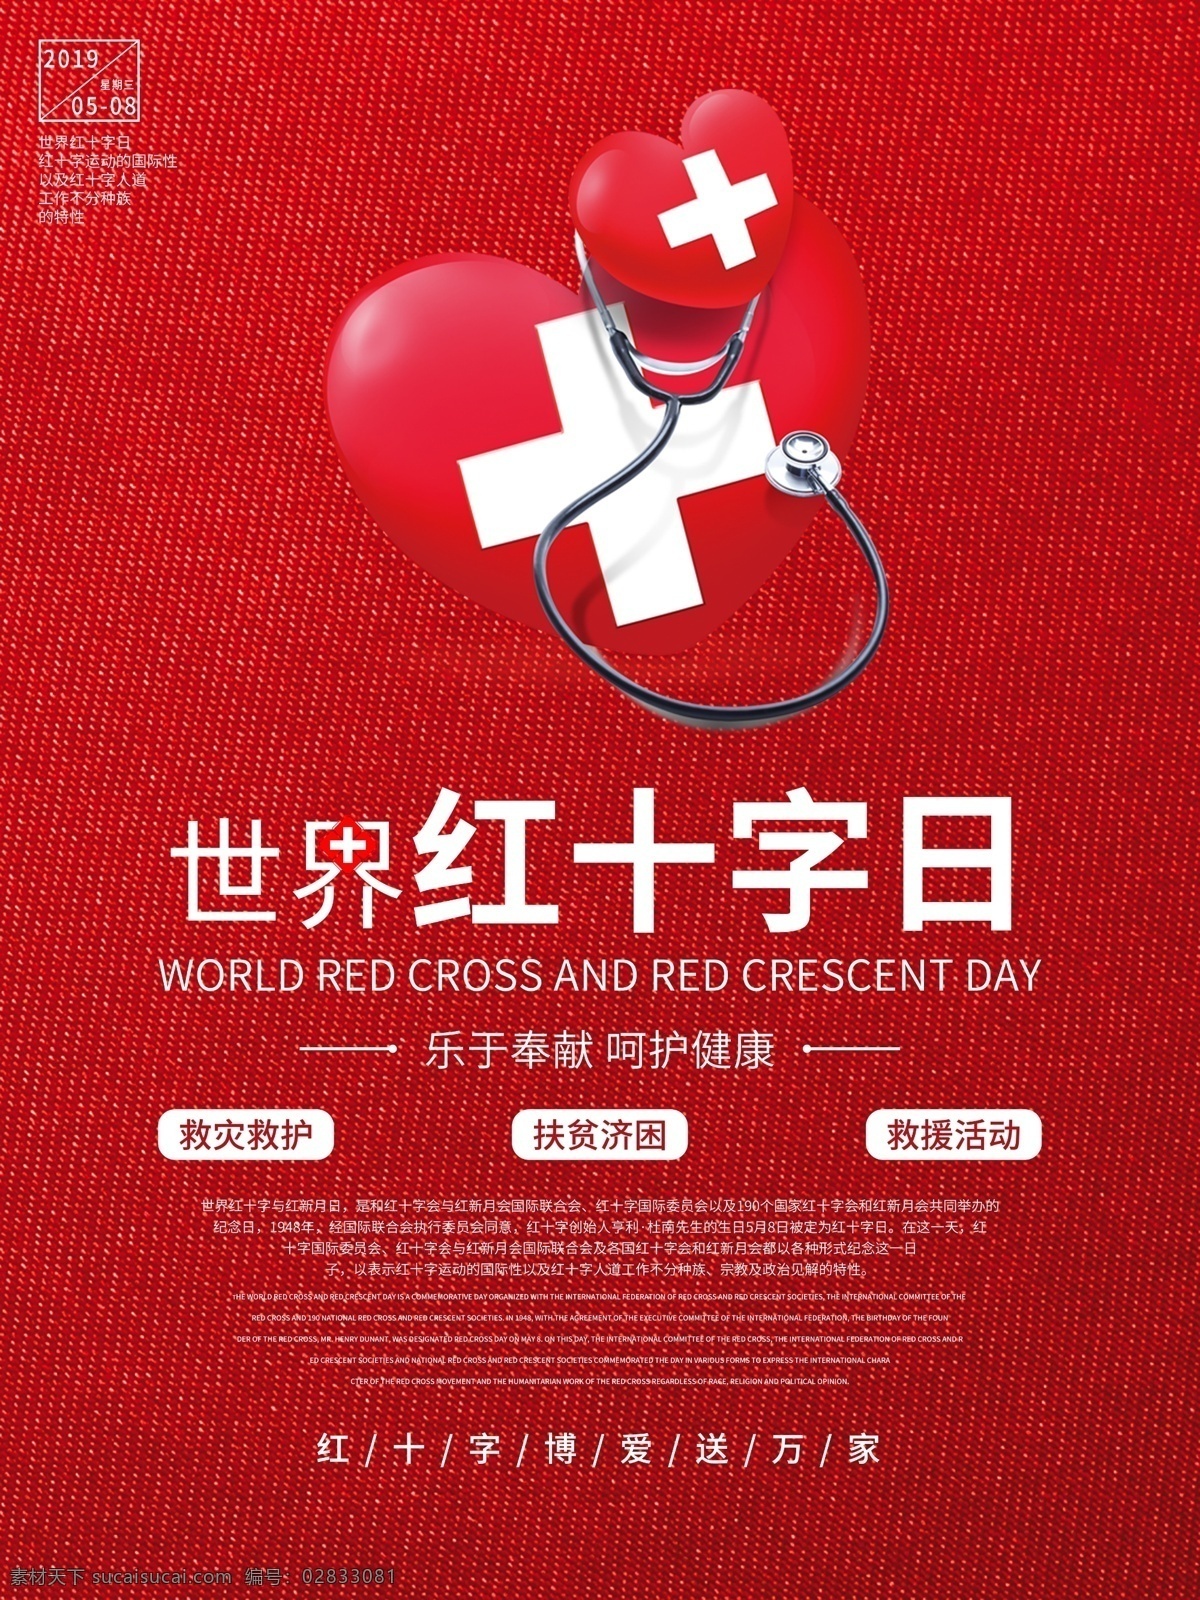 红色 简约 世界 红十字日 海报 世界红十字日